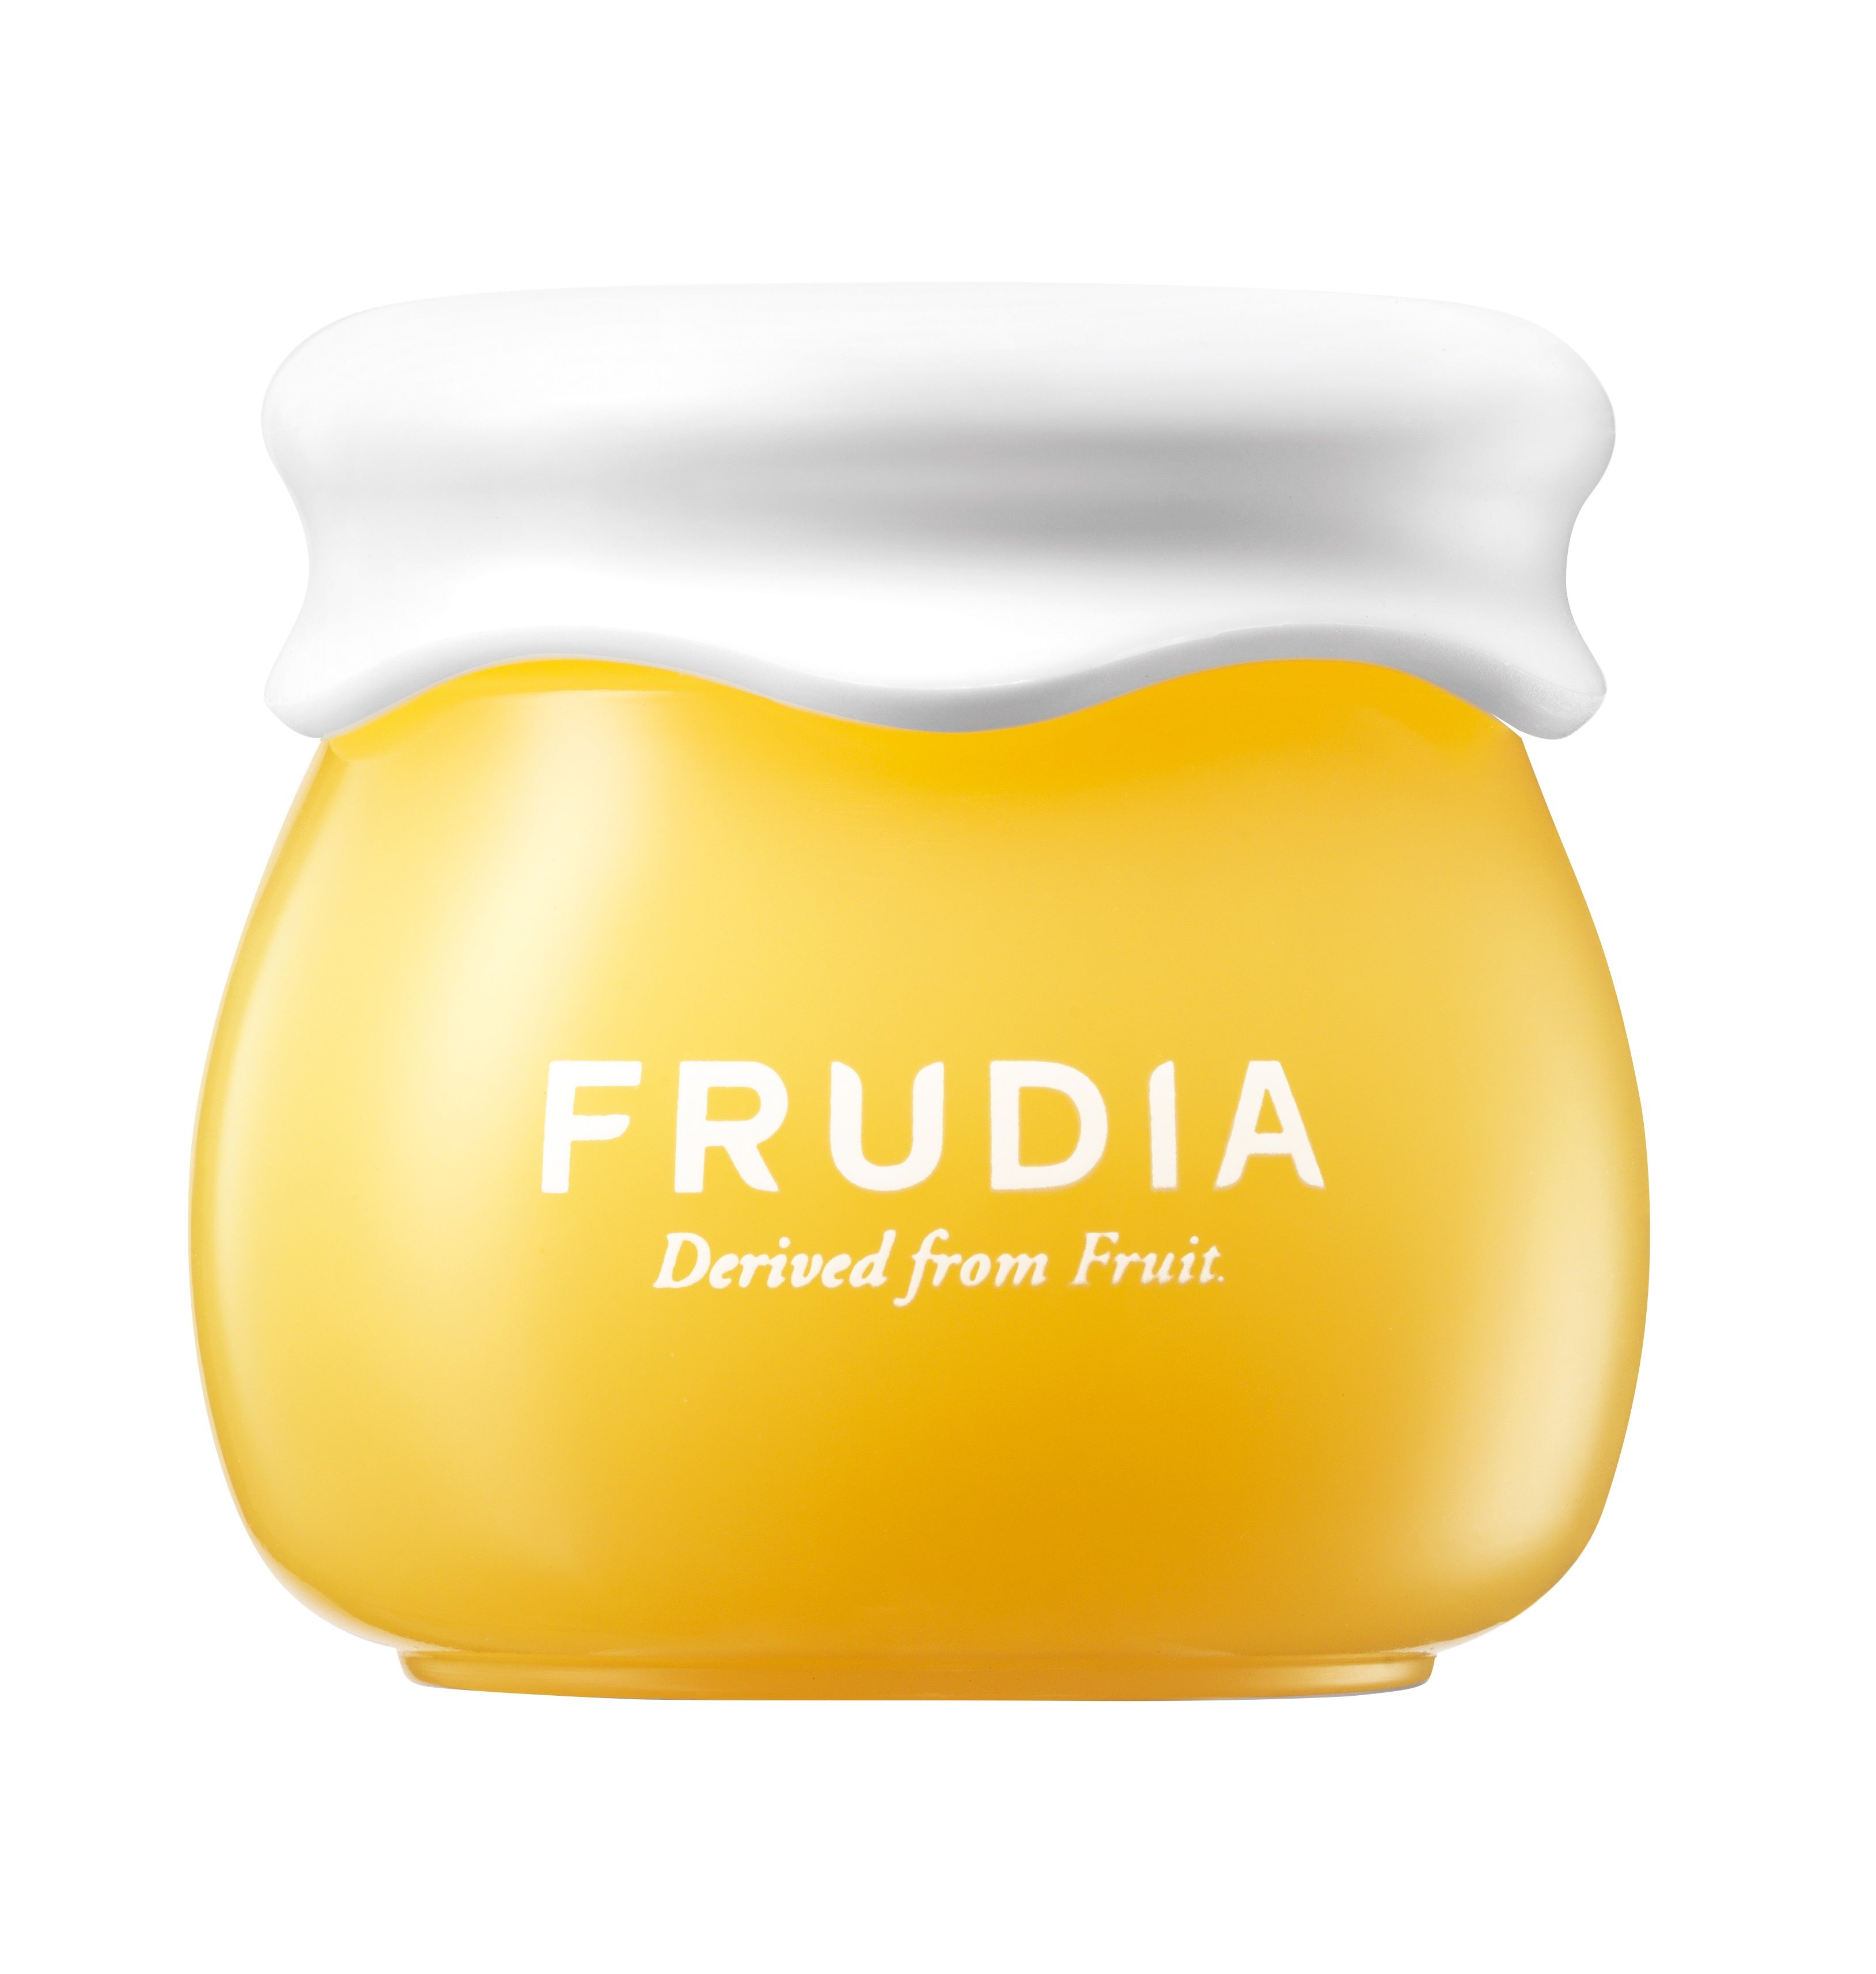 Frudia Citrus Brightening Cream 10 g